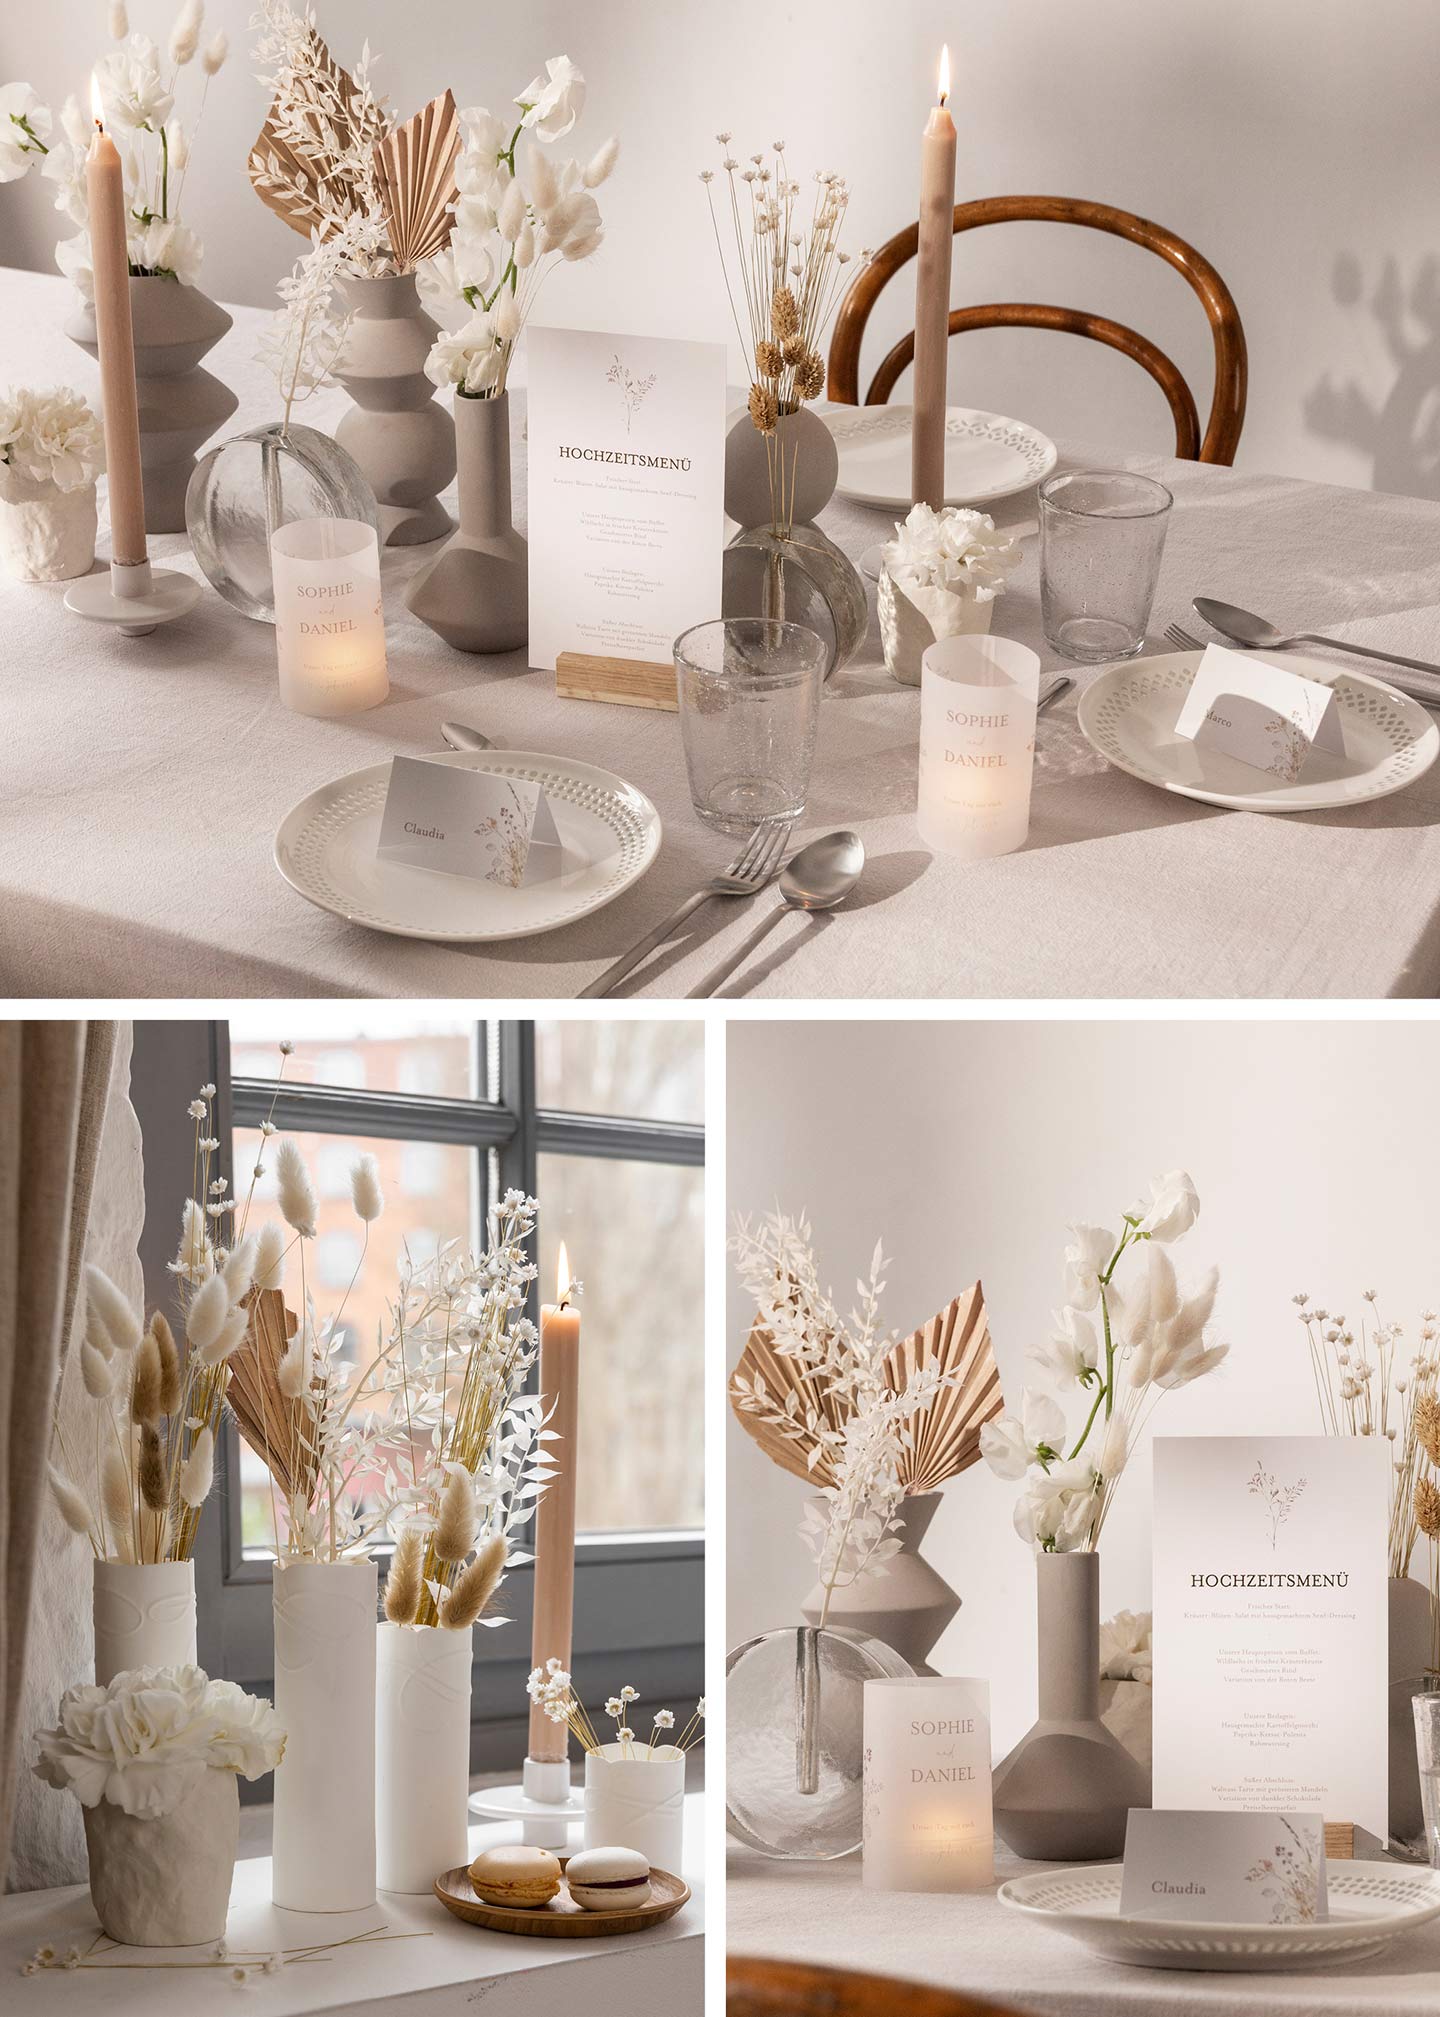 Gedeckter Tisch zur Hochzeit in Beige, Weiß und Minimal gestaltet 